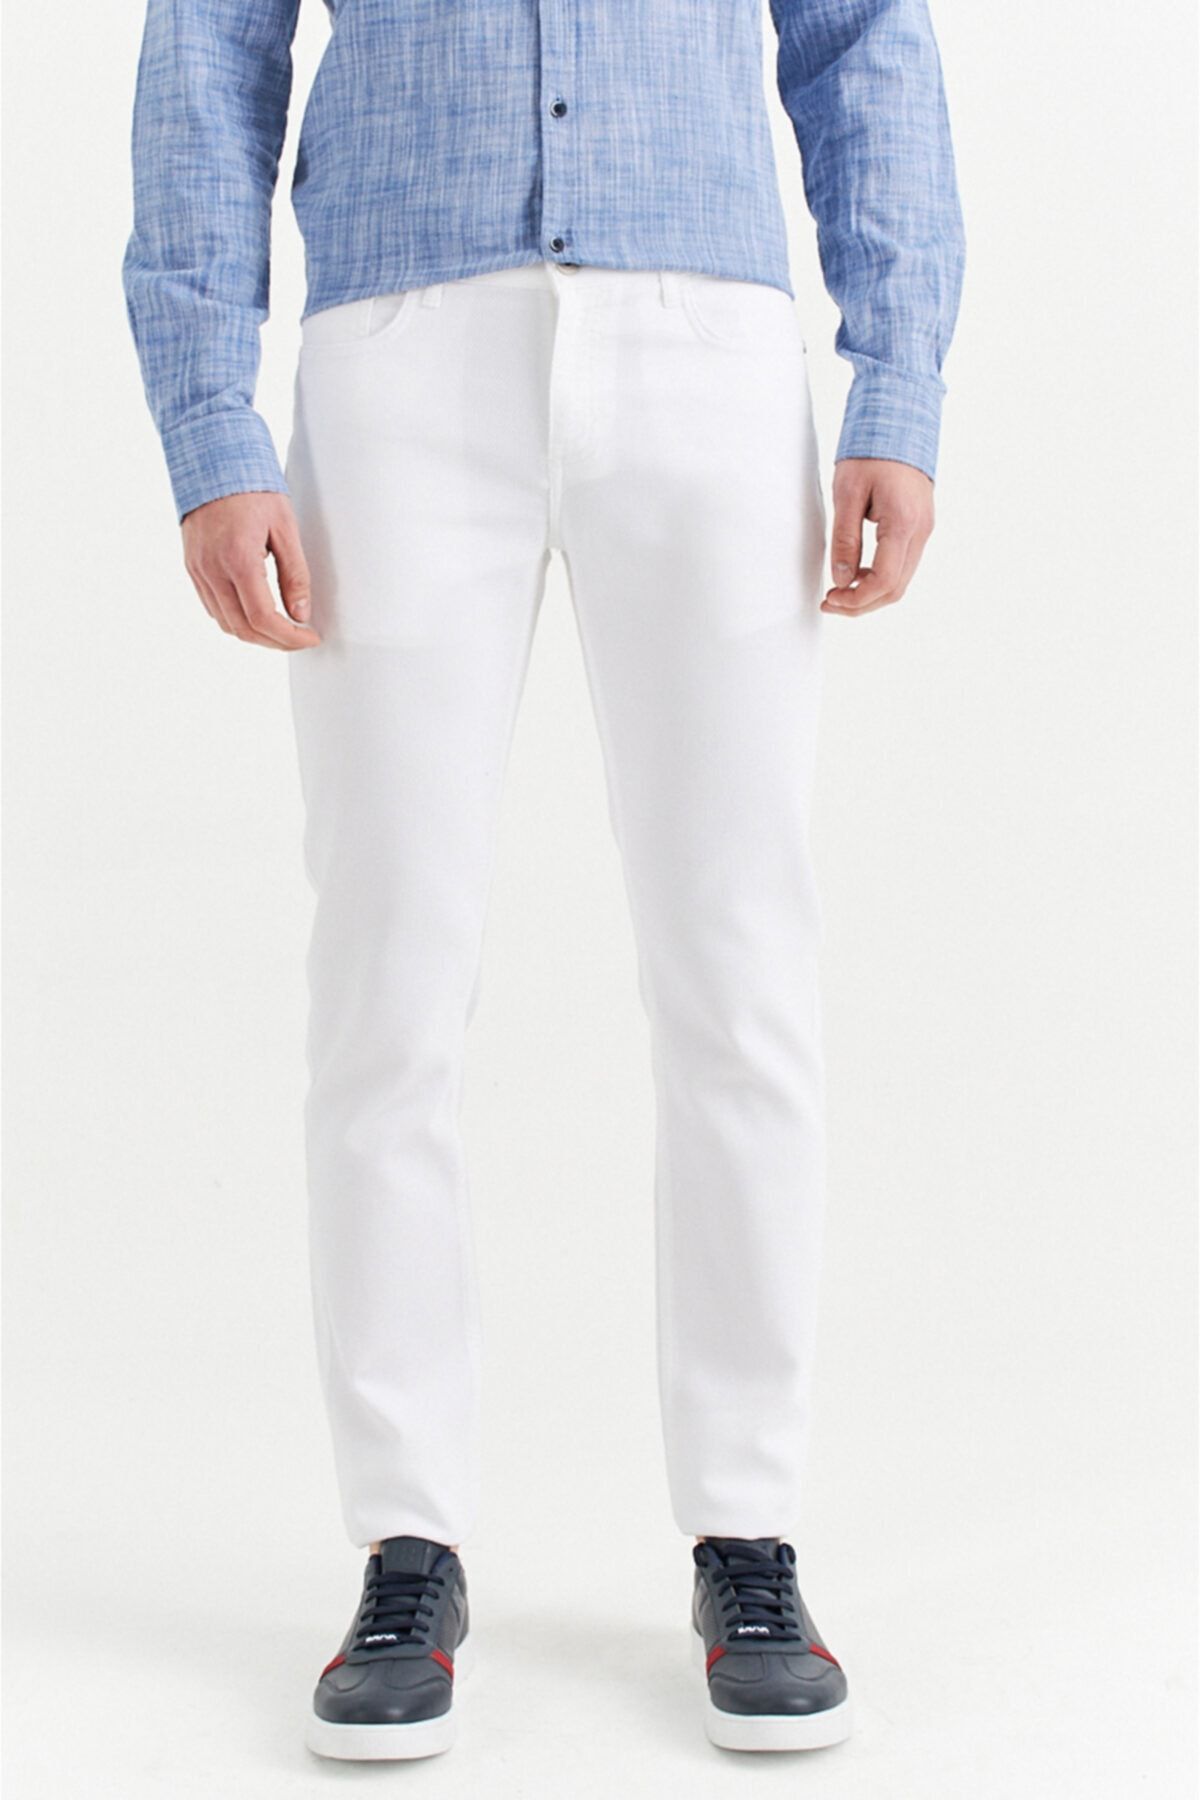 Avva Erkek Beyaz 5 Cepli Armürlü Slim Fit Pantolon A01y3044